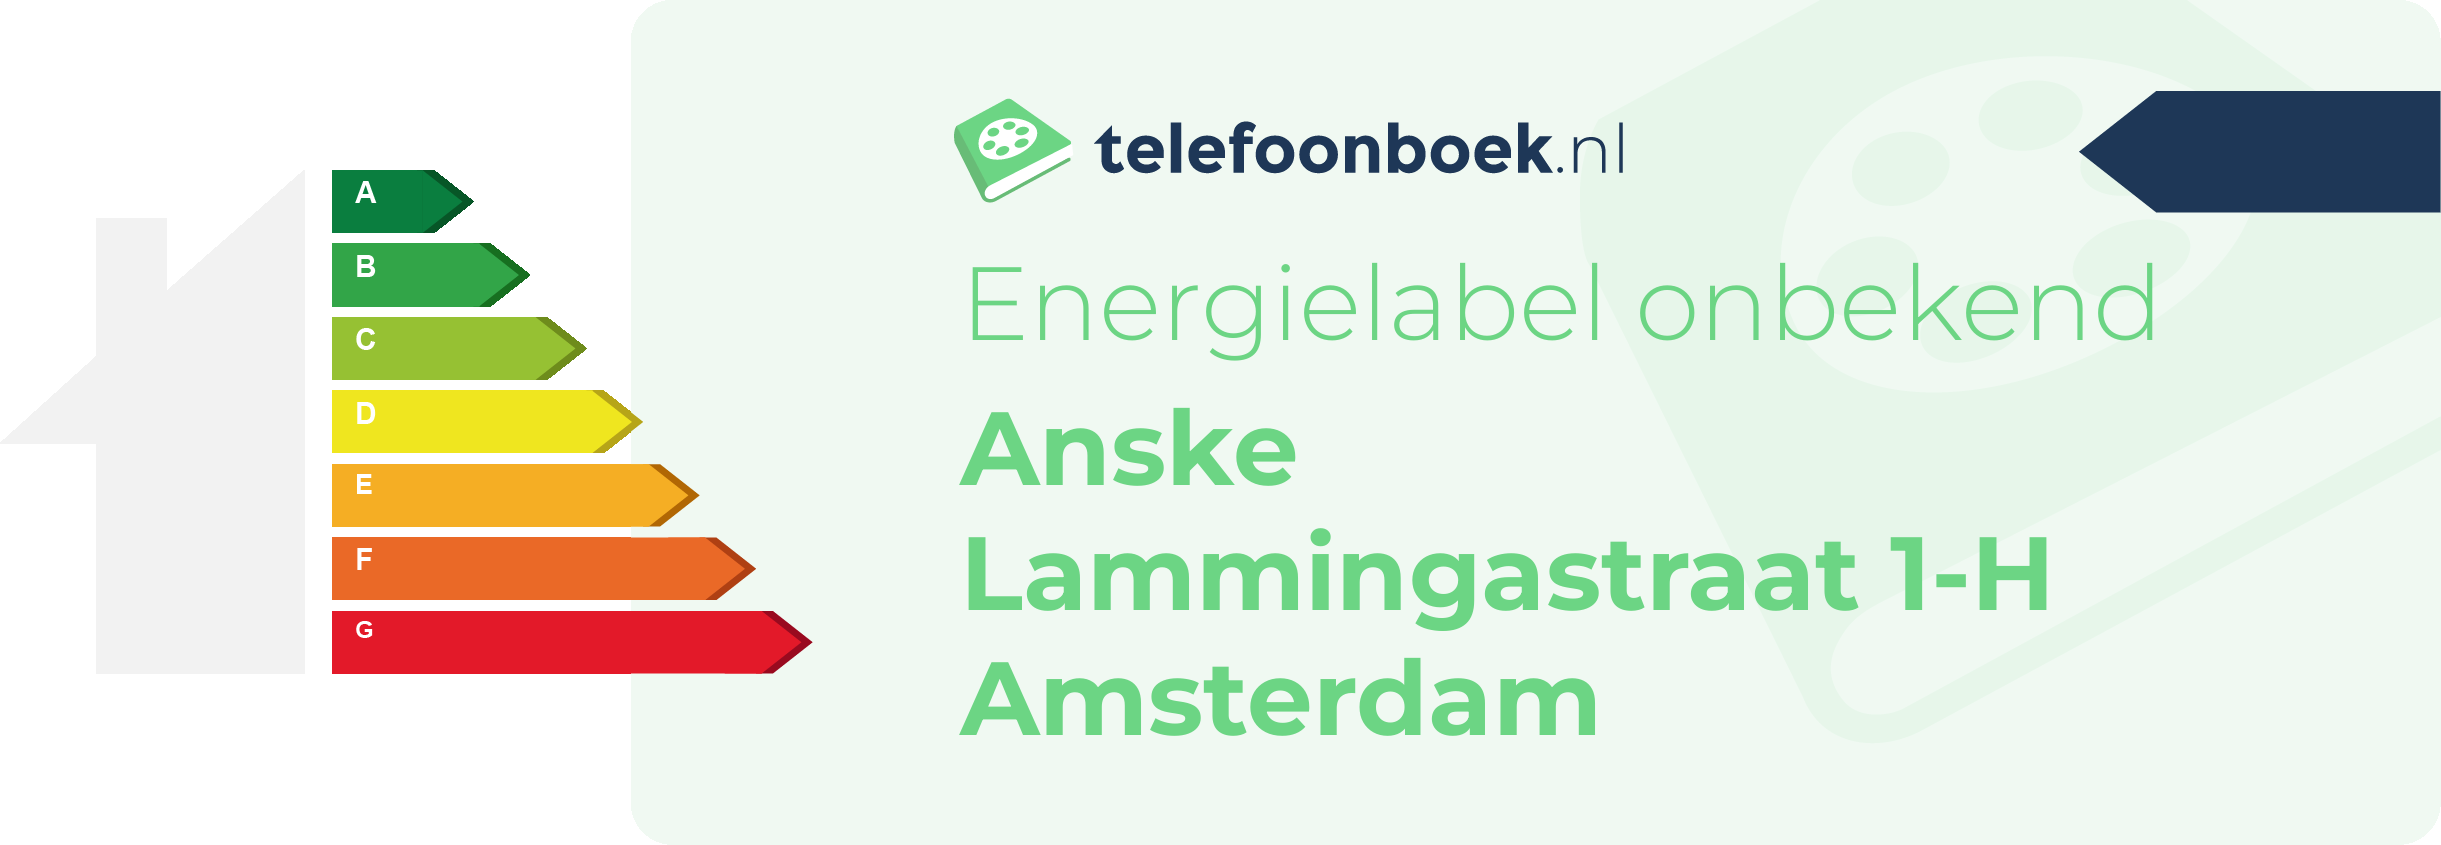 Energielabel Anske Lammingastraat 1-H Amsterdam